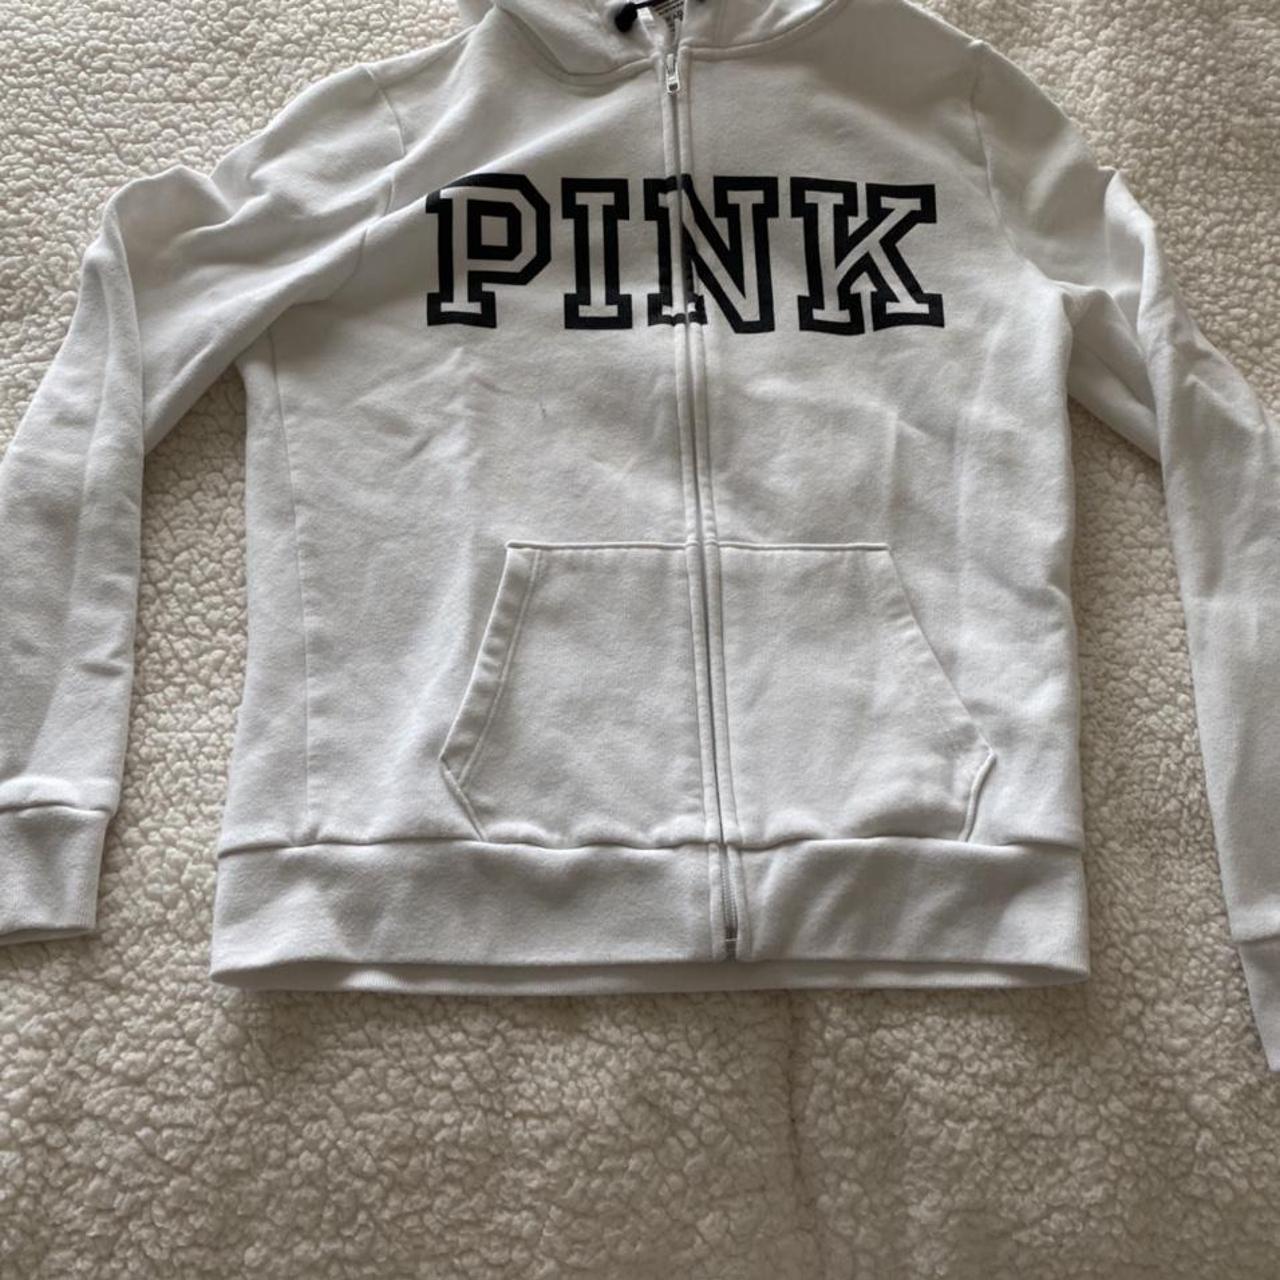 Pink zip up hoodie. Lightweight hoodie with no flaws... - Depop